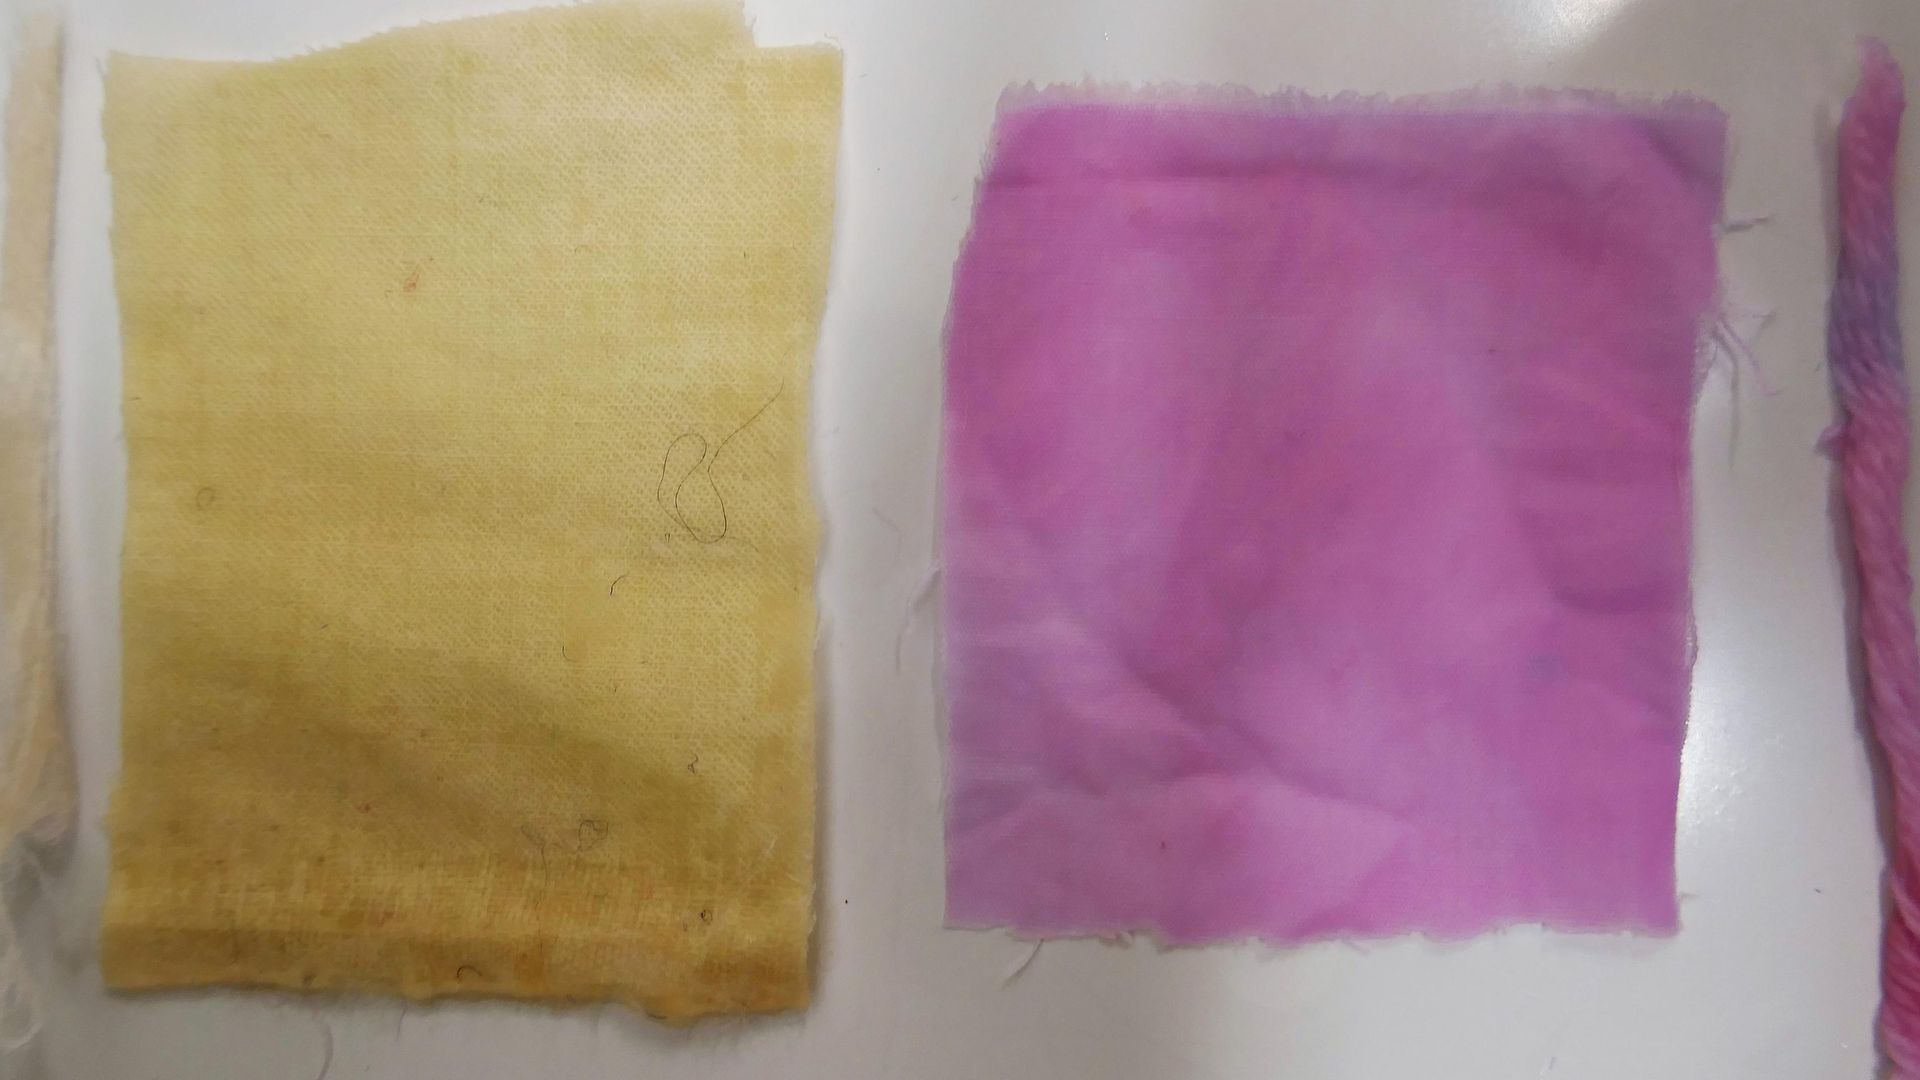 gefärbte Baumwoll- und Wollstoffstücke nebeneinander